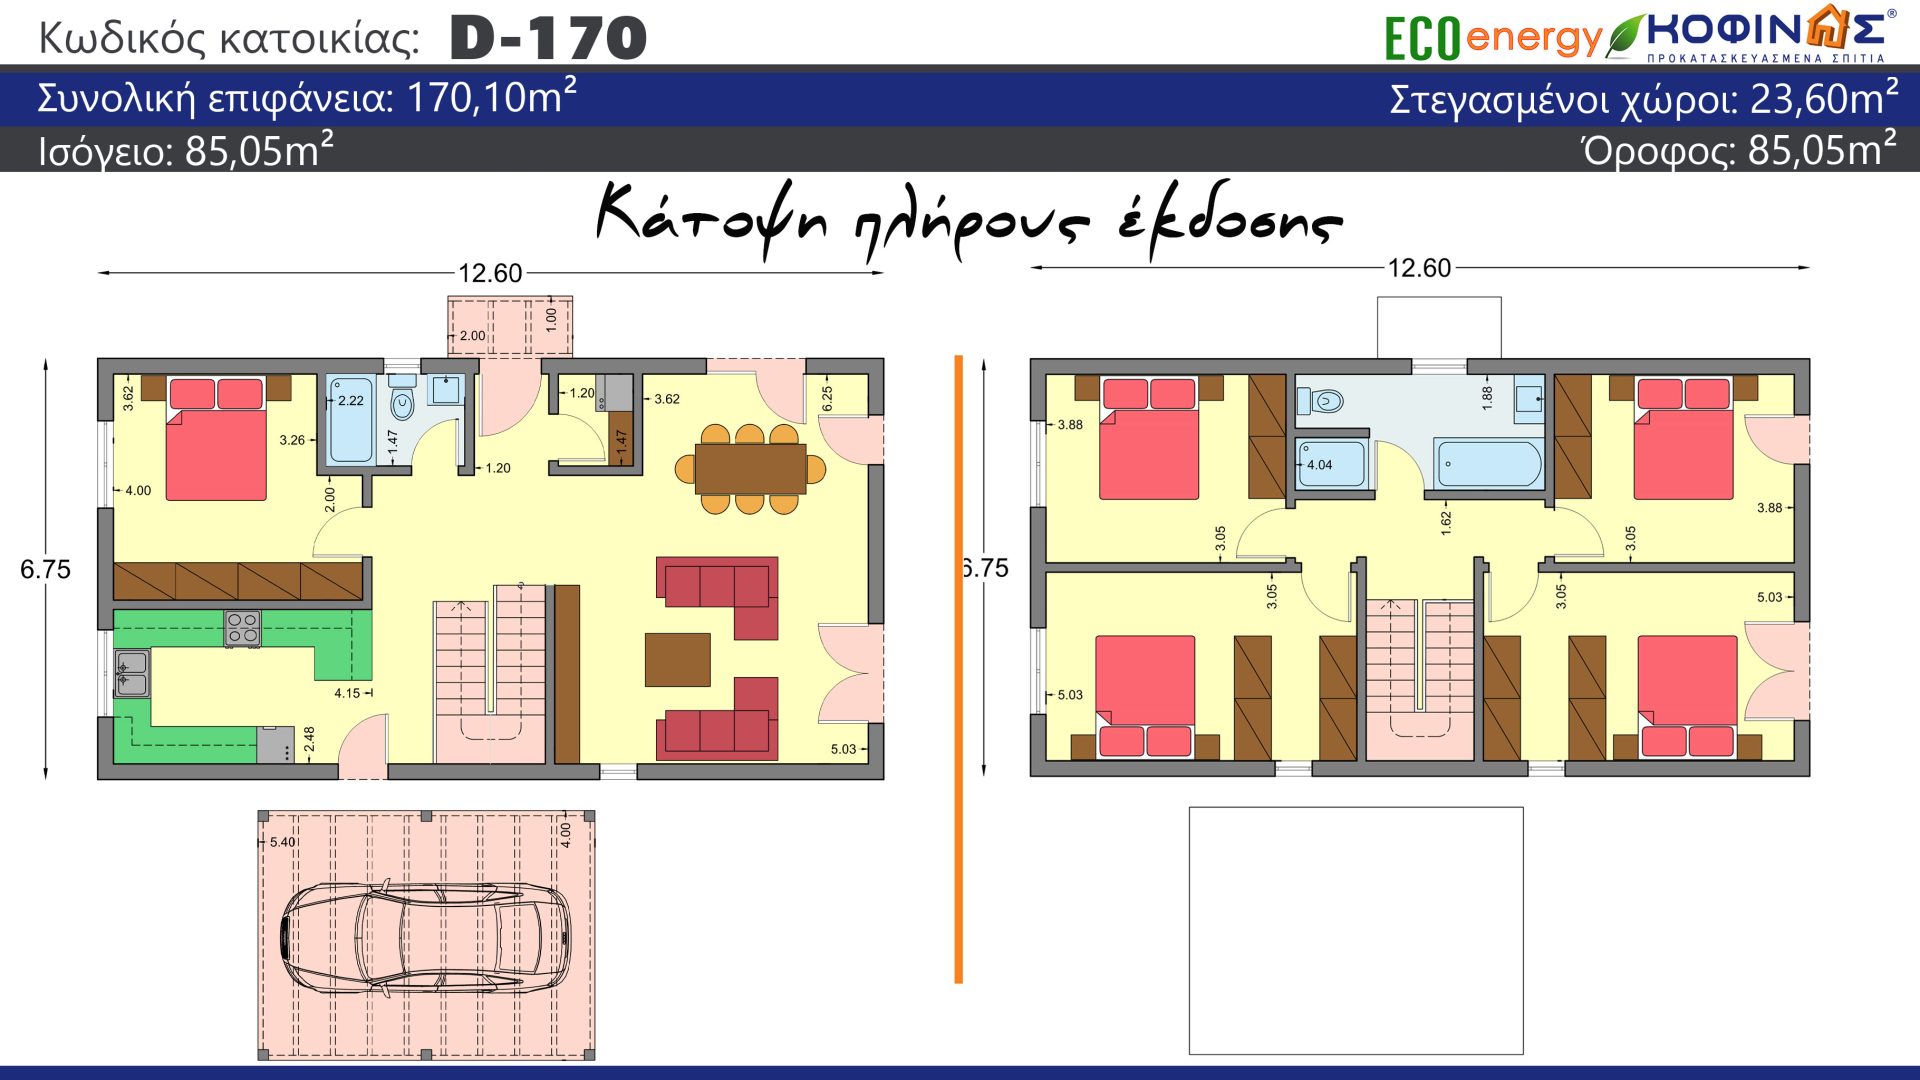 Διώροφη Κατοικία D-170, συνολικής επιφάνειας 170.10 τ.μ., συνολική επιφάνεια στεγασμένων χώρων 23.60 τ.μ.